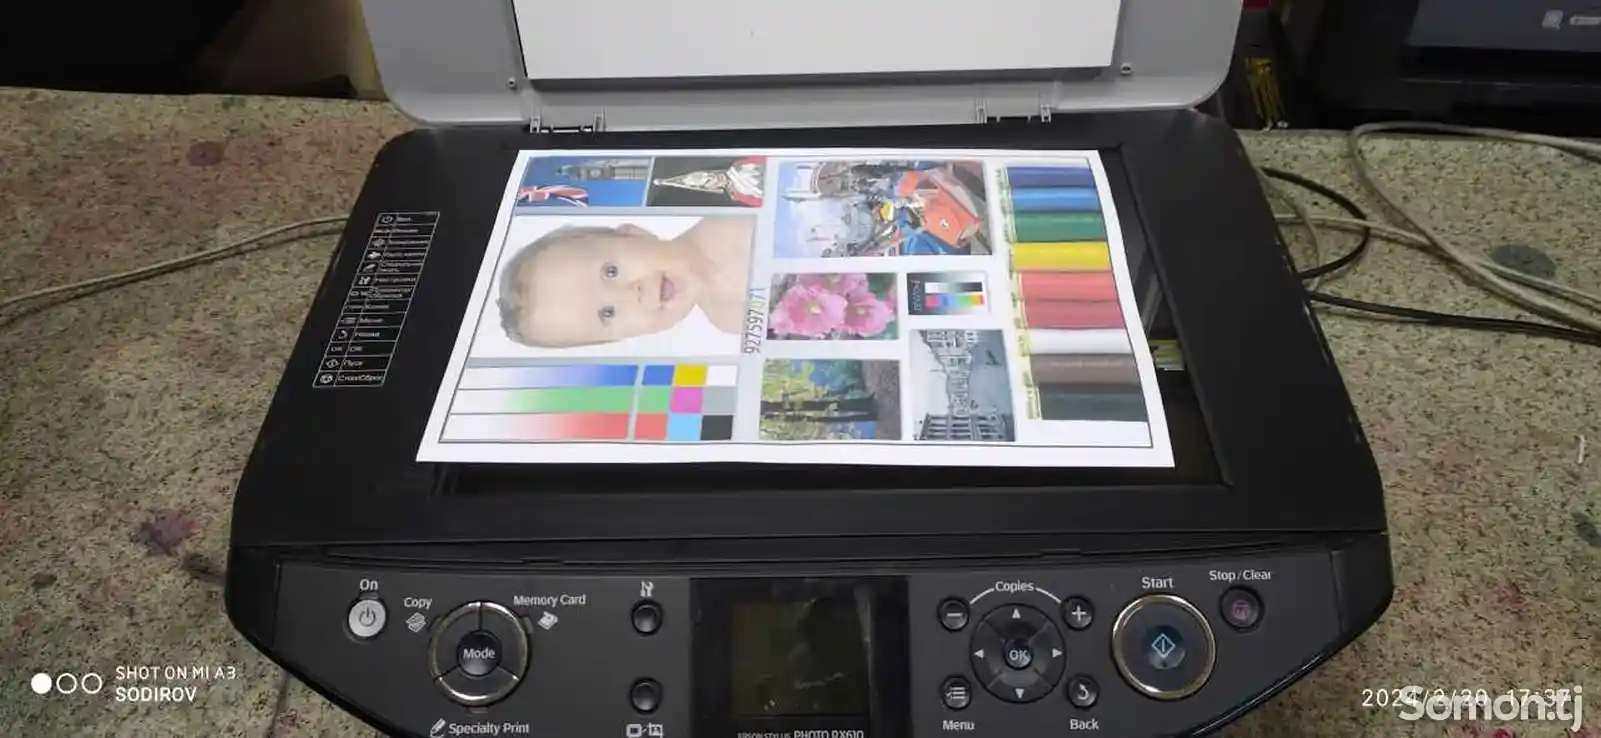 Цветной принтер 3в1 Epson RX610-2